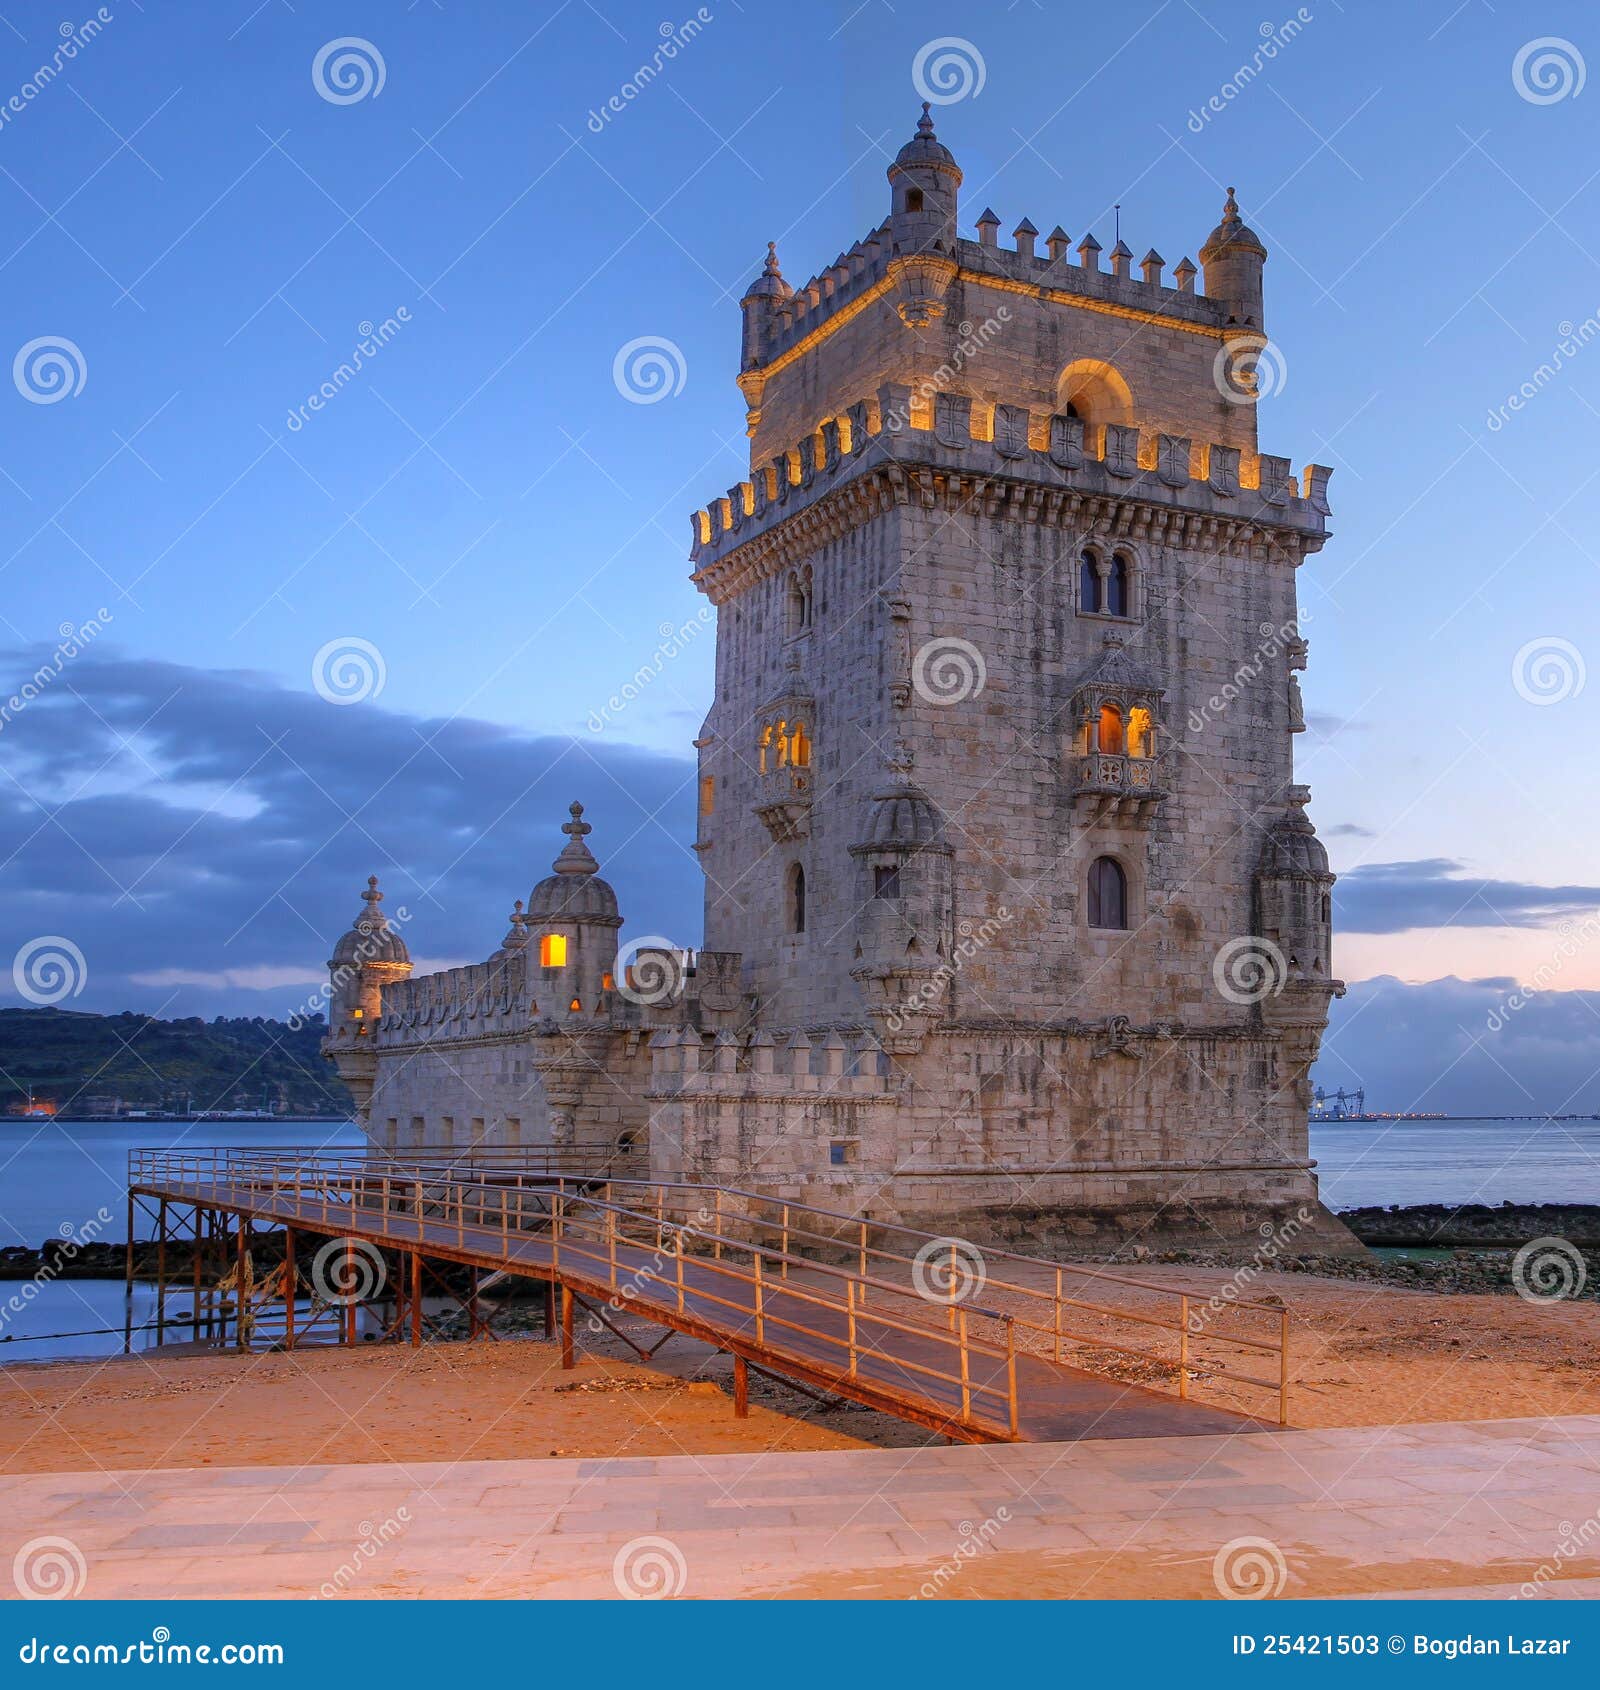 belem tower, lisbon, portugal